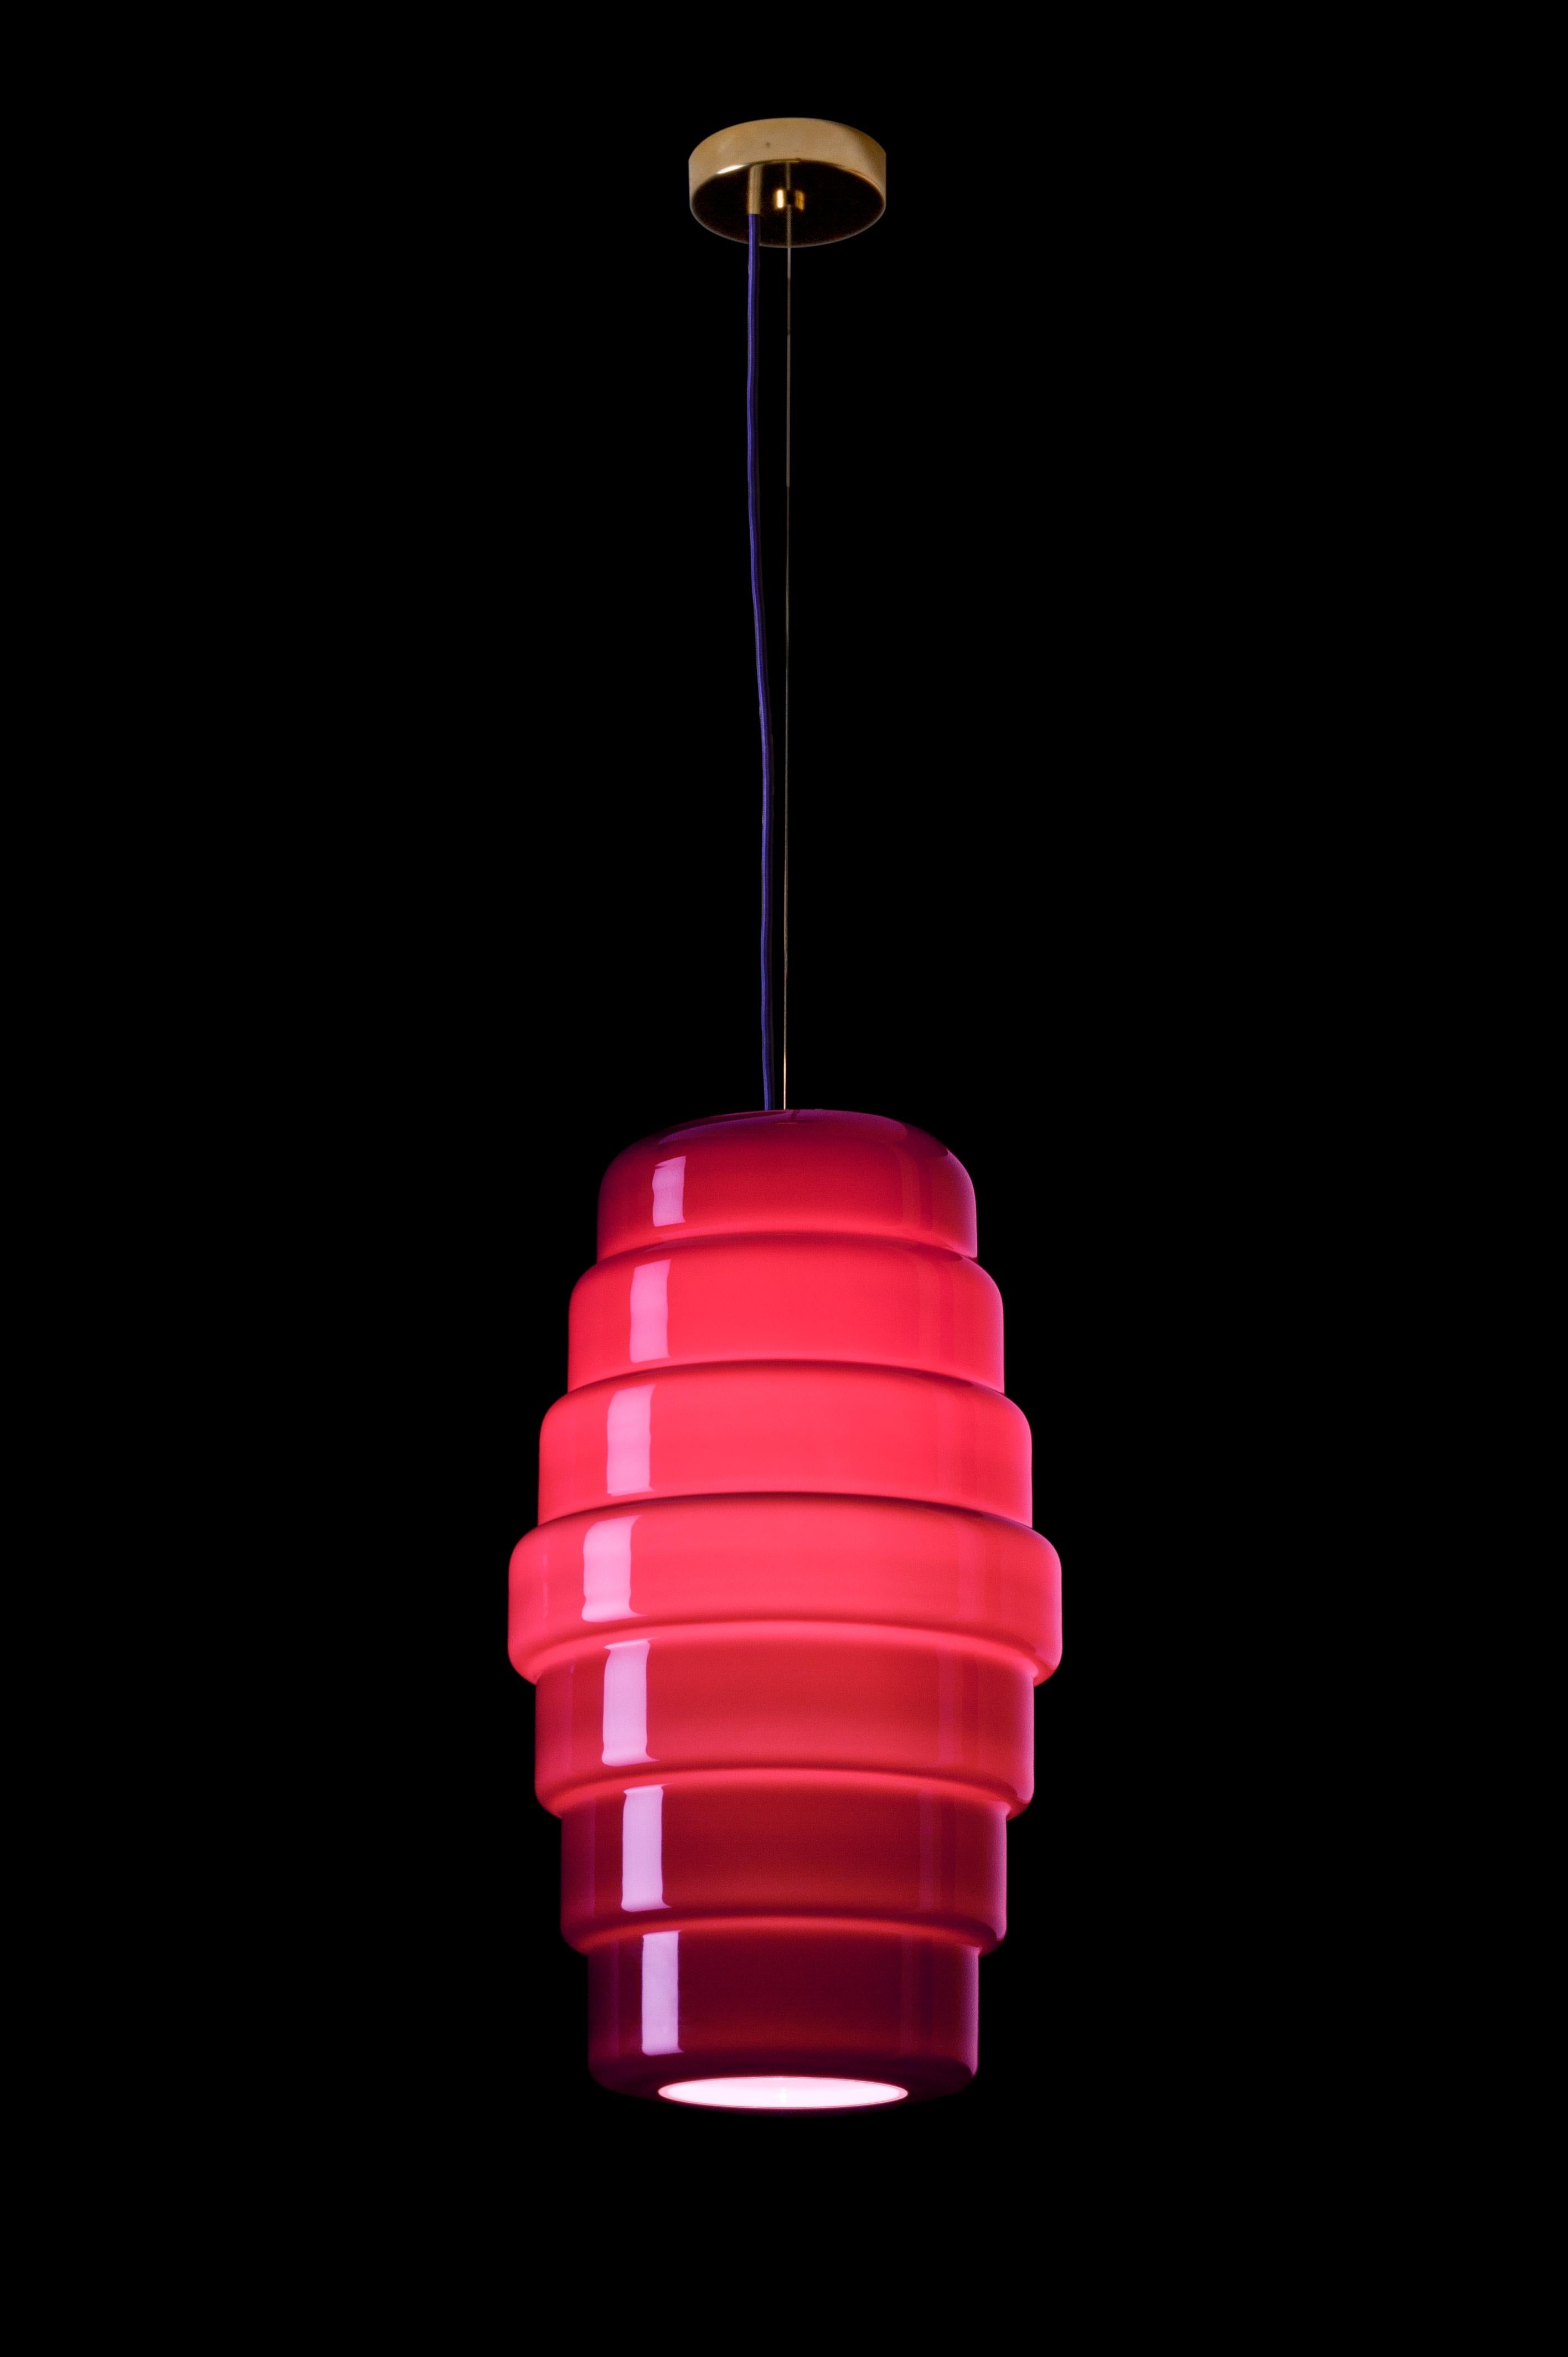 La lampe suspendue Zoe, conçue par Doriana et Massimiliano Fuksas et fabriquée par Venini, présente une forme de lanterne. Disponible en deux tailles différentes. Utilisation intérieure uniquement.

Dimensions : Ø 30 cm, H 52,5 cm : Ø 30 cm, H